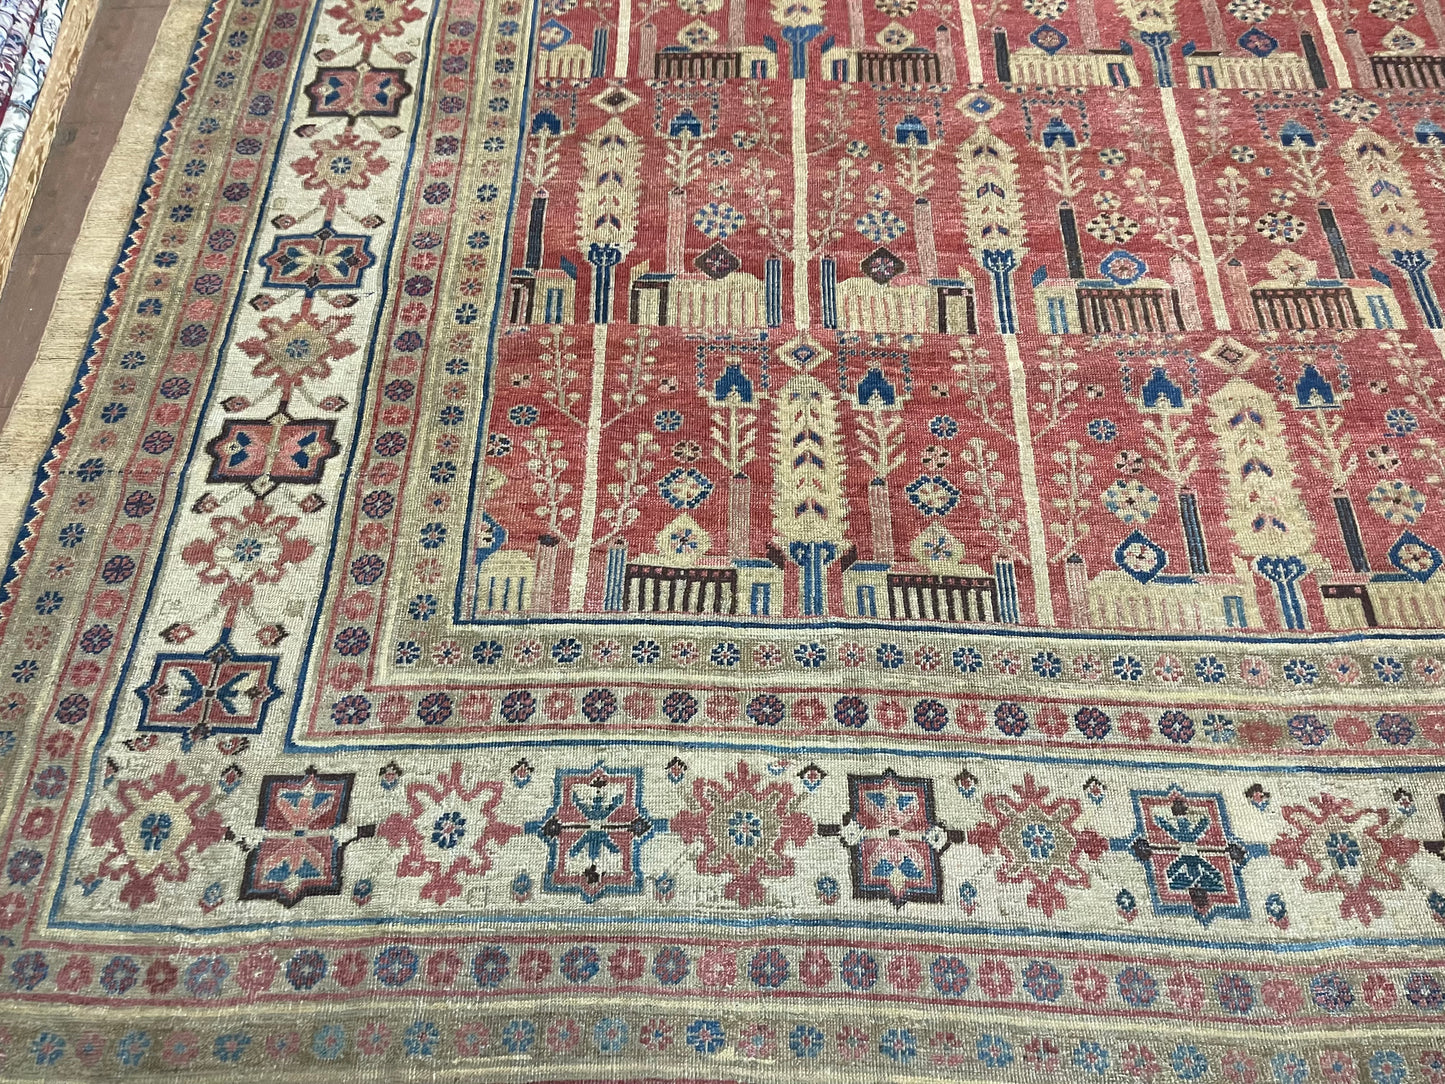 Angled shot of the palace-sized rug showcasing its symmetrical layout